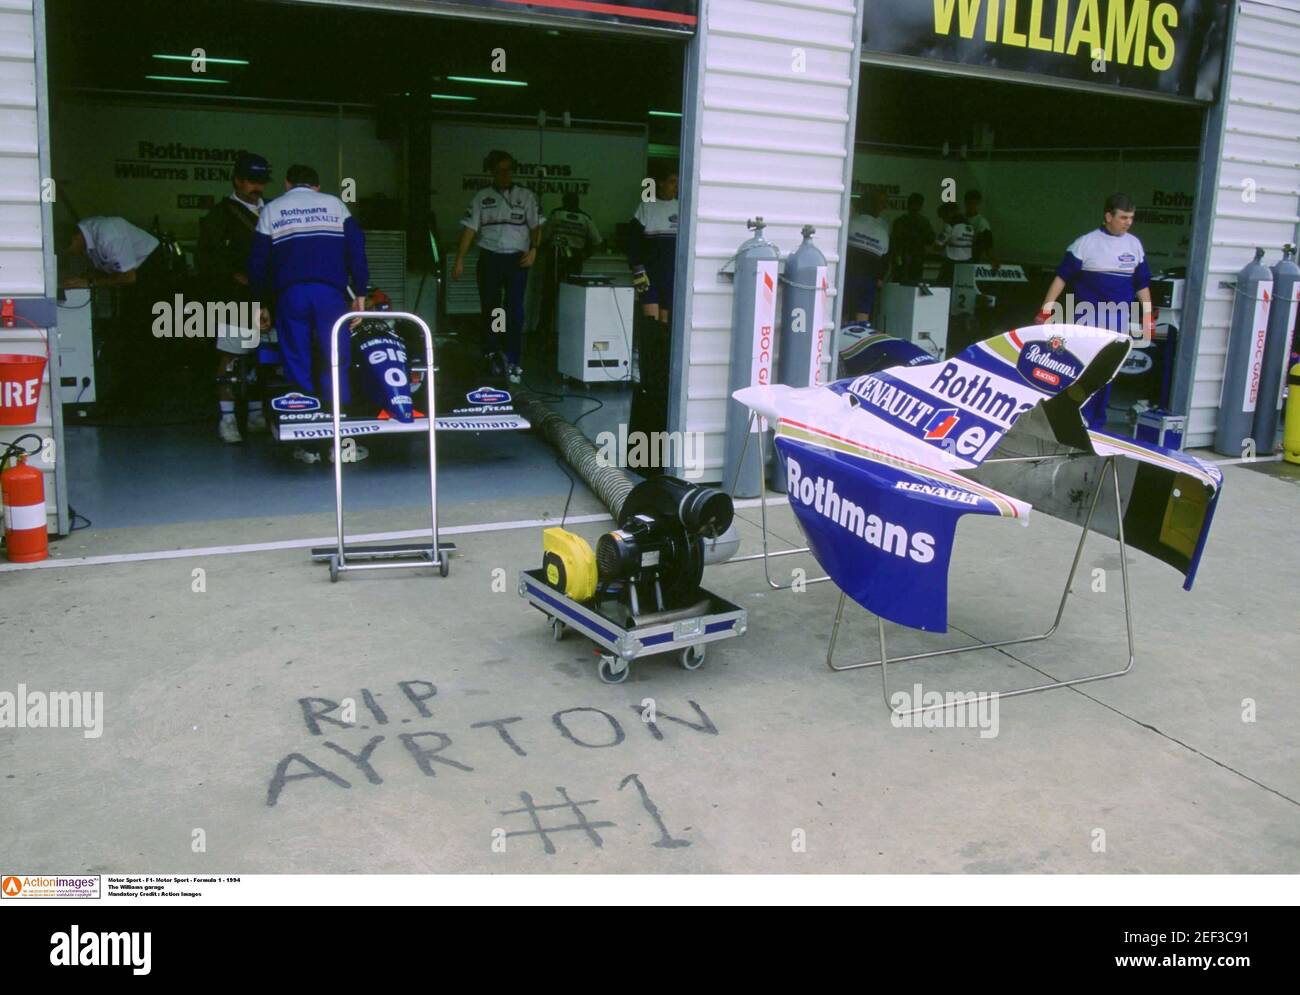 Deporte de Motor - F1 - Deporte de Motor - Fórmula 1 - 1994 el garaje Williams crédito obligatorio: Imágenes de Acción Foto de stock